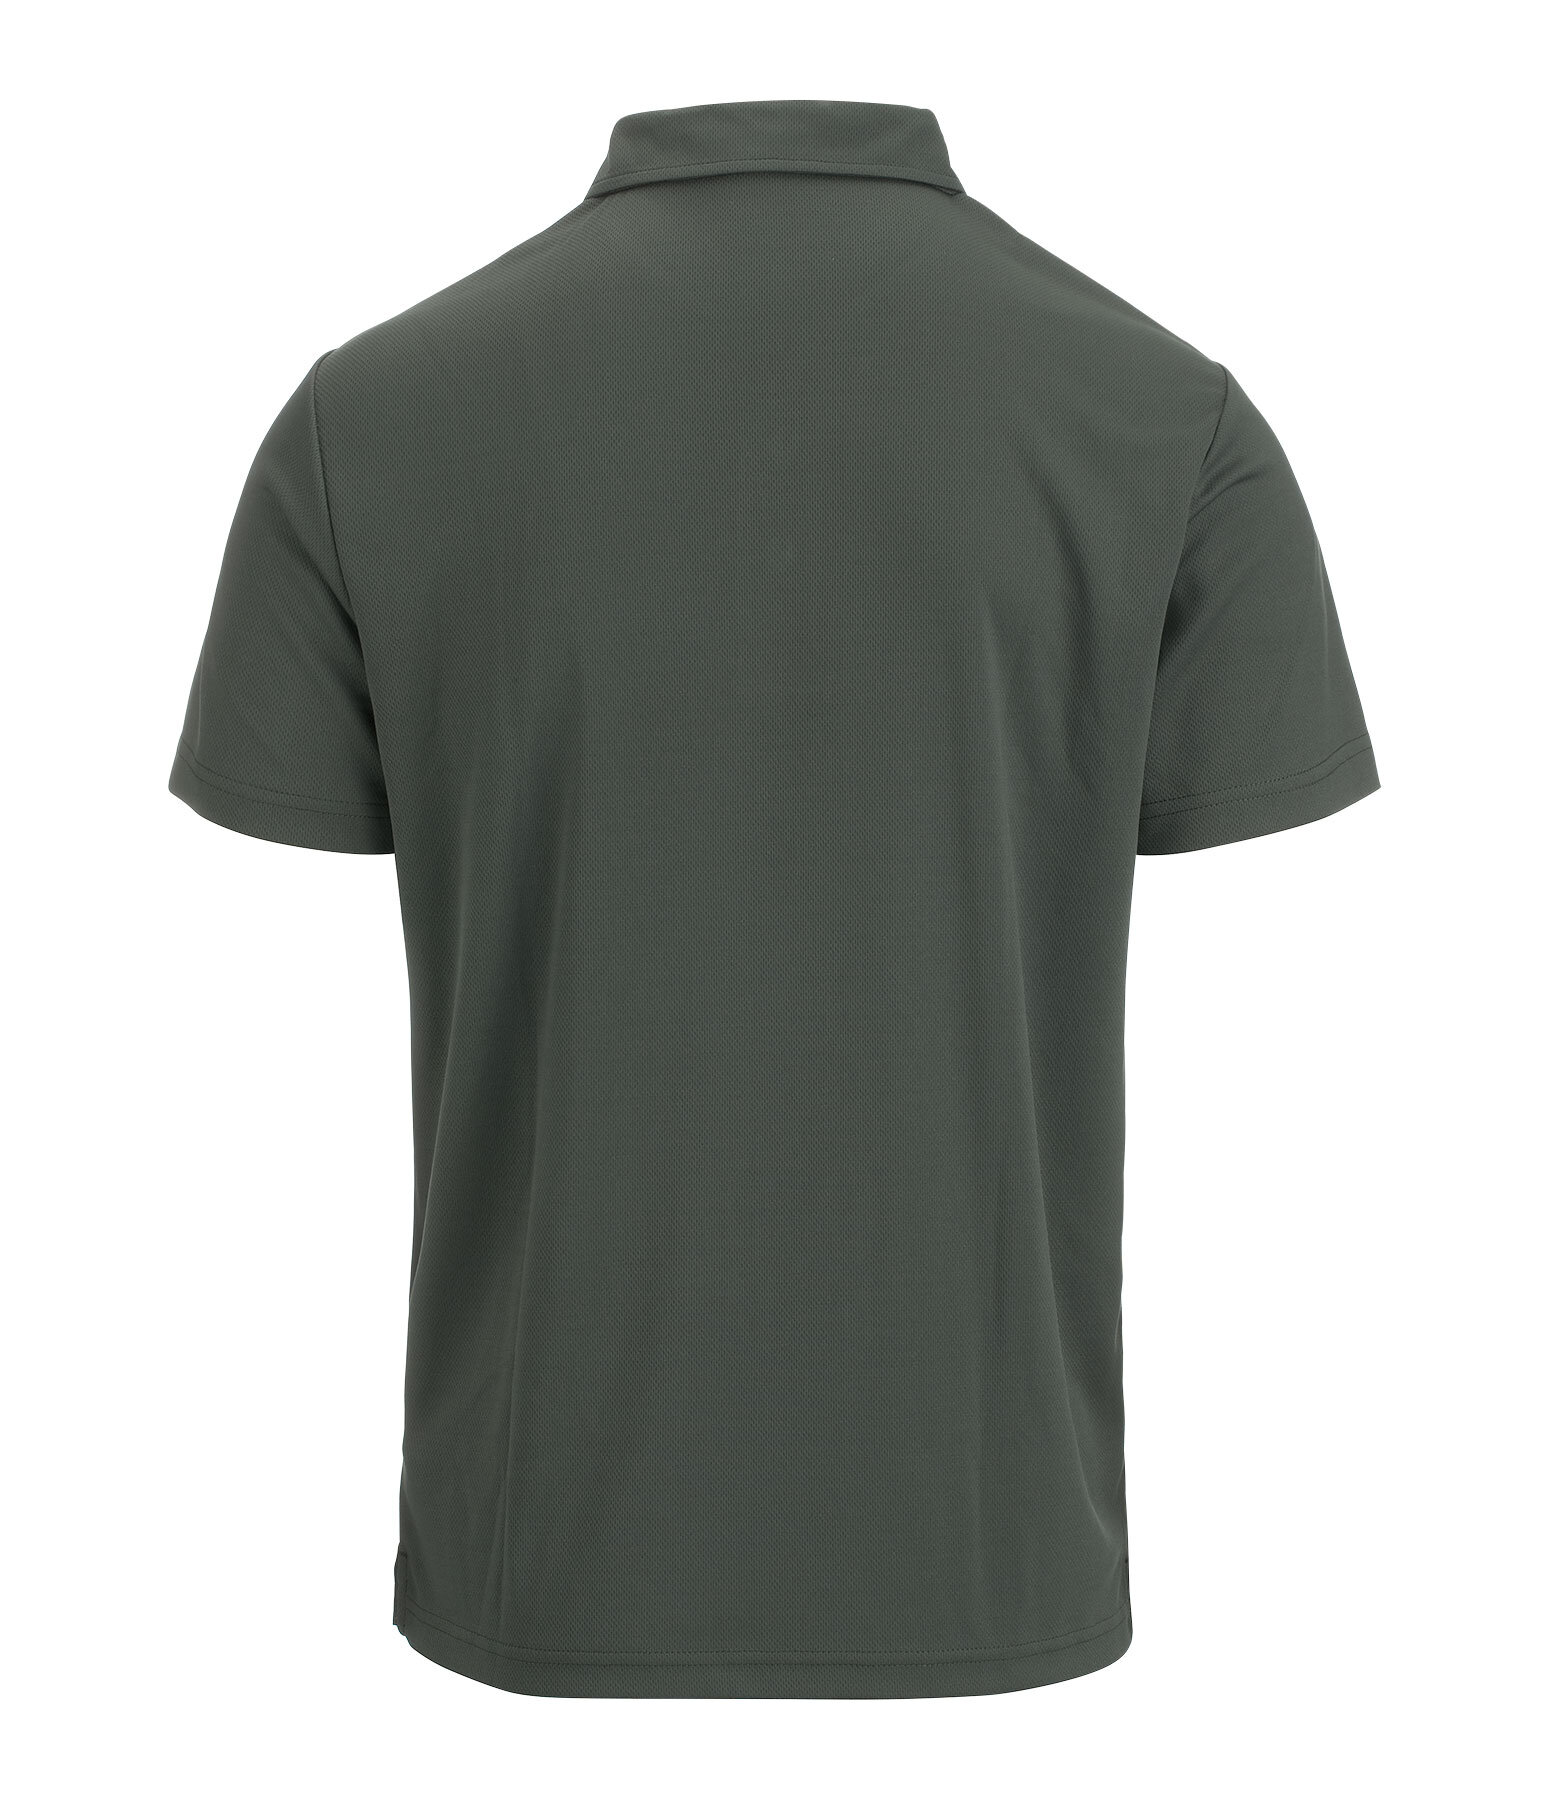 Men's Functional Polo Shirt Denver